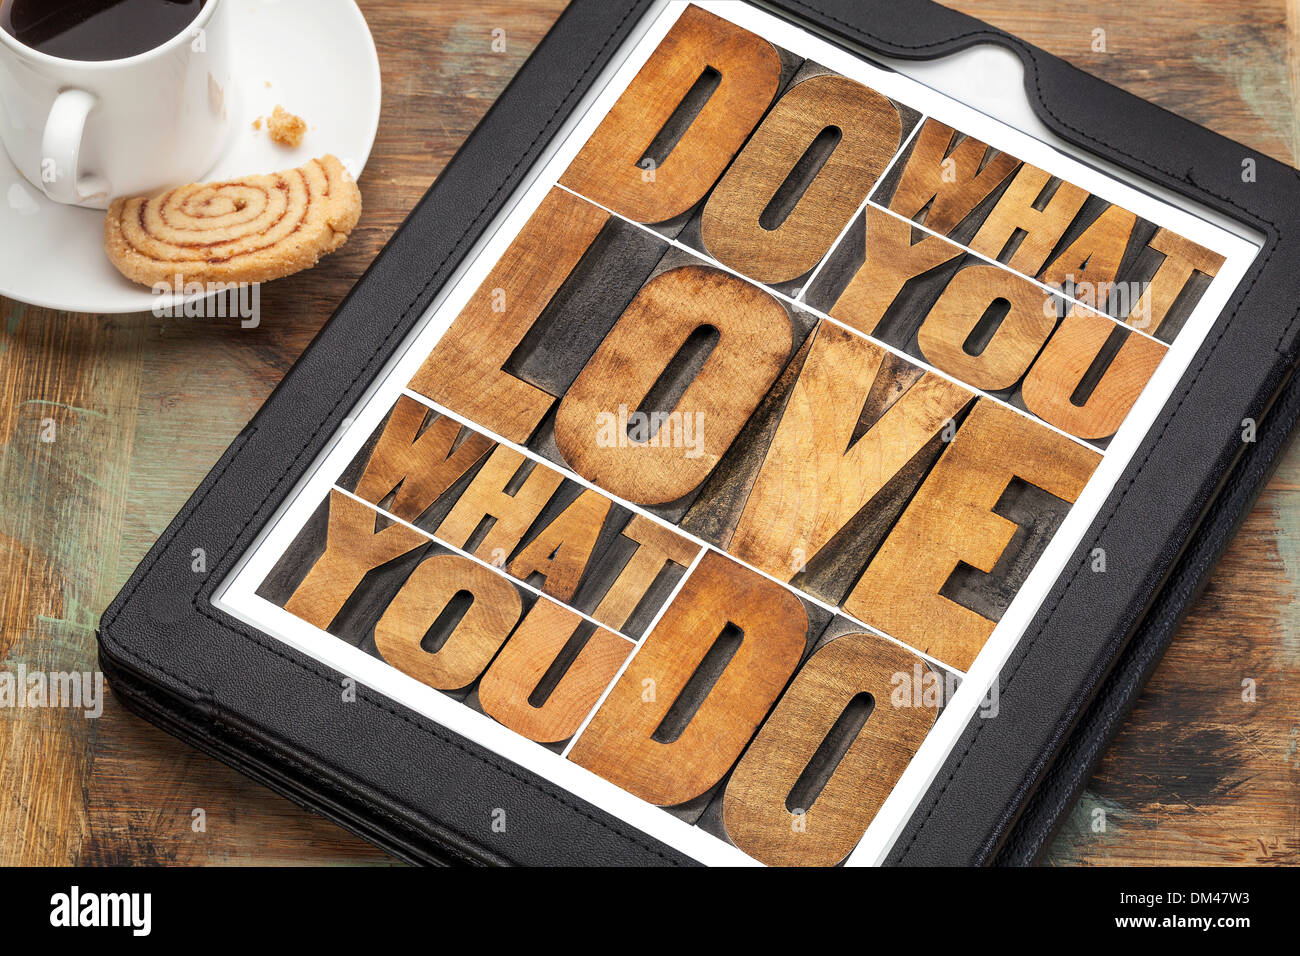 Faites ce que vous aimez, aimez ce que vous faites - mot de motivation résumé dans la typographie vintage type de bois sur une tablette numérique Banque D'Images